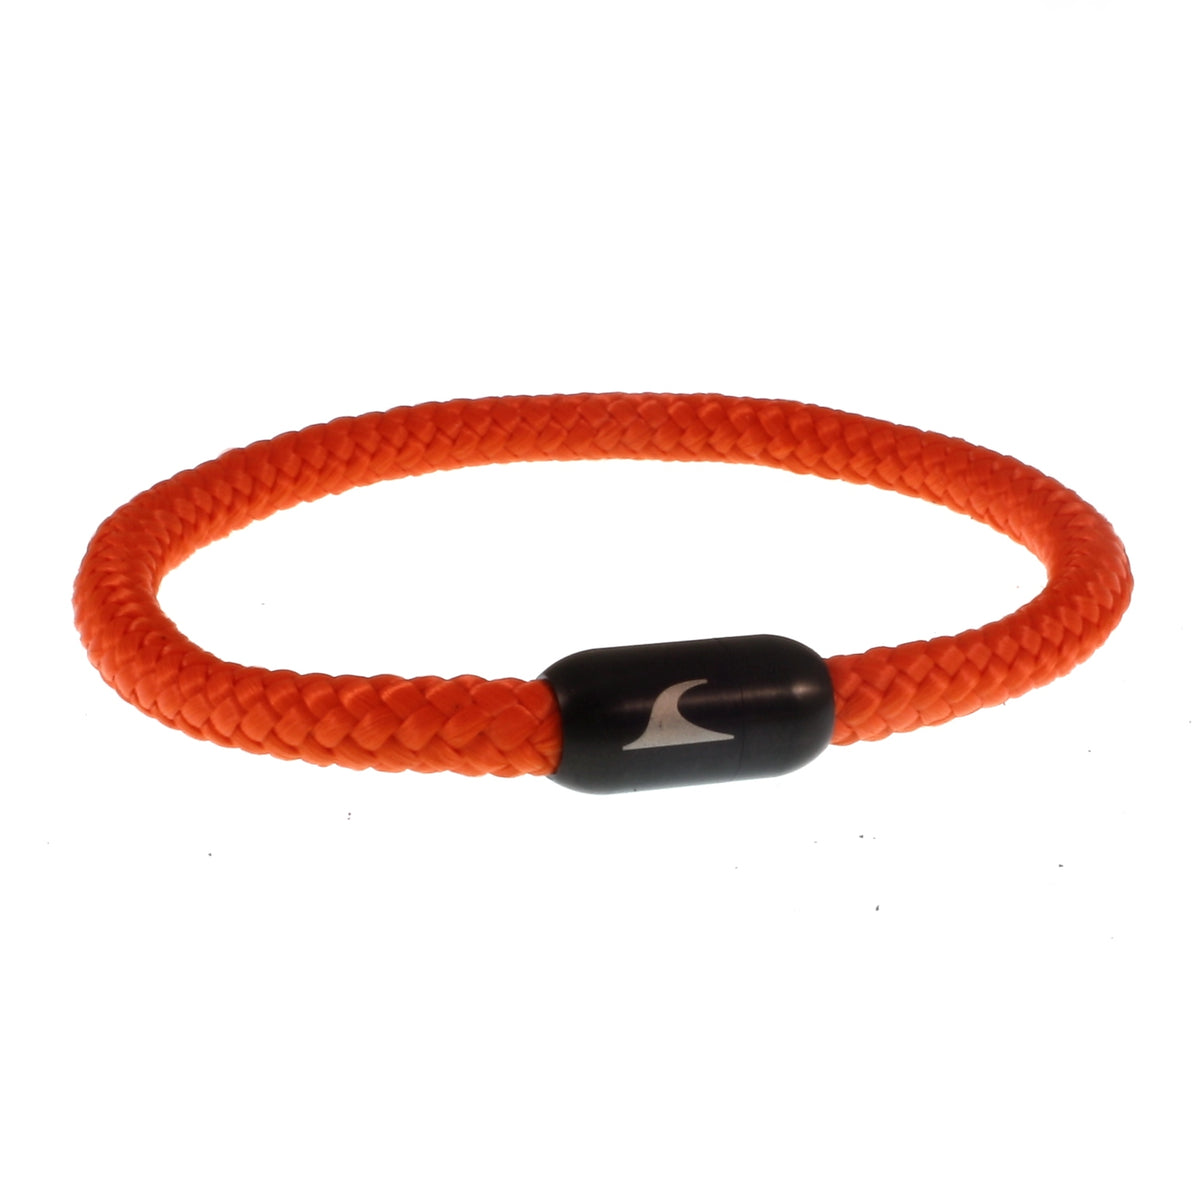 Herren-segeltau-armband-damen-sylt-orange-schwarz-geflochten-Edelstahlverschluss-vorn-wavepirate-shop-st